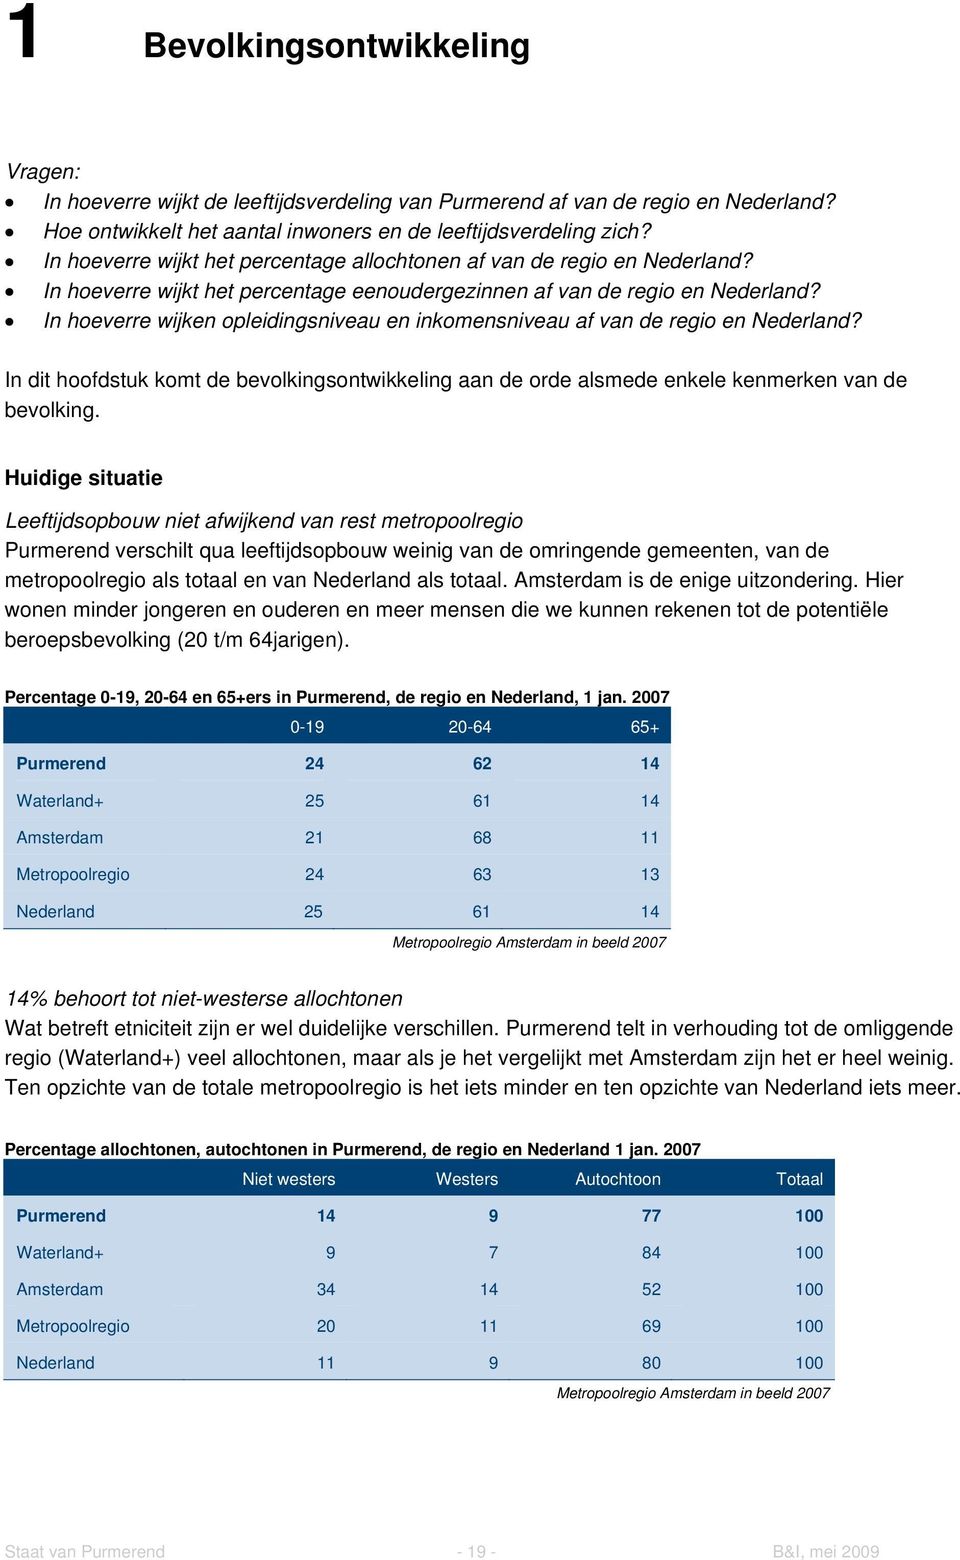 In hoeverre wijken opleidingsniveau en inkomensniveau af van de regio en Nederland? In dit hoofdstuk komt de bevolkingsontwikkeling aan de orde alsmede enkele kenmerken van de bevolking.